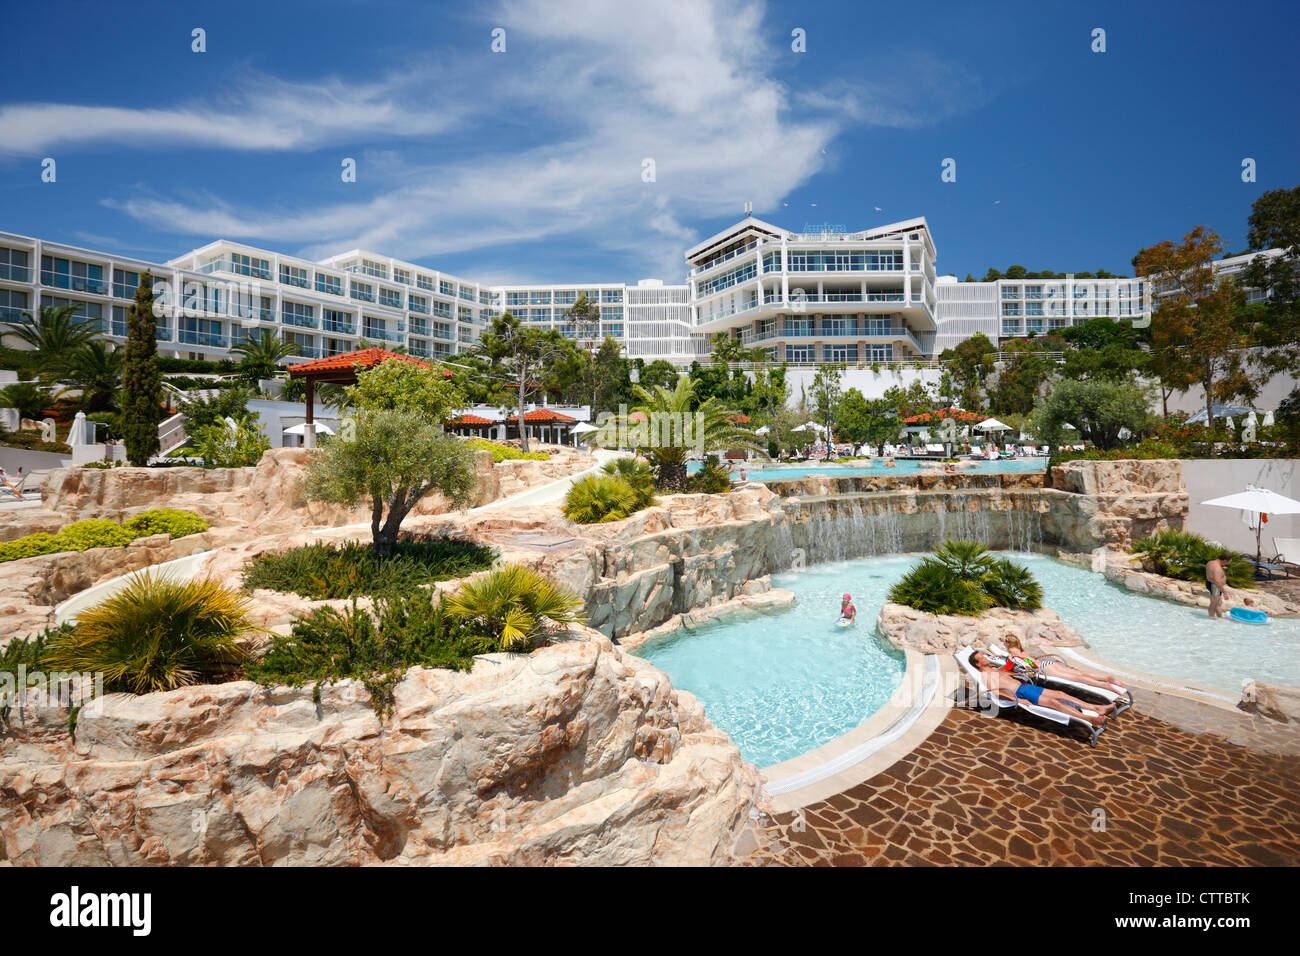 Amfora - grand beach resort Stock Photo